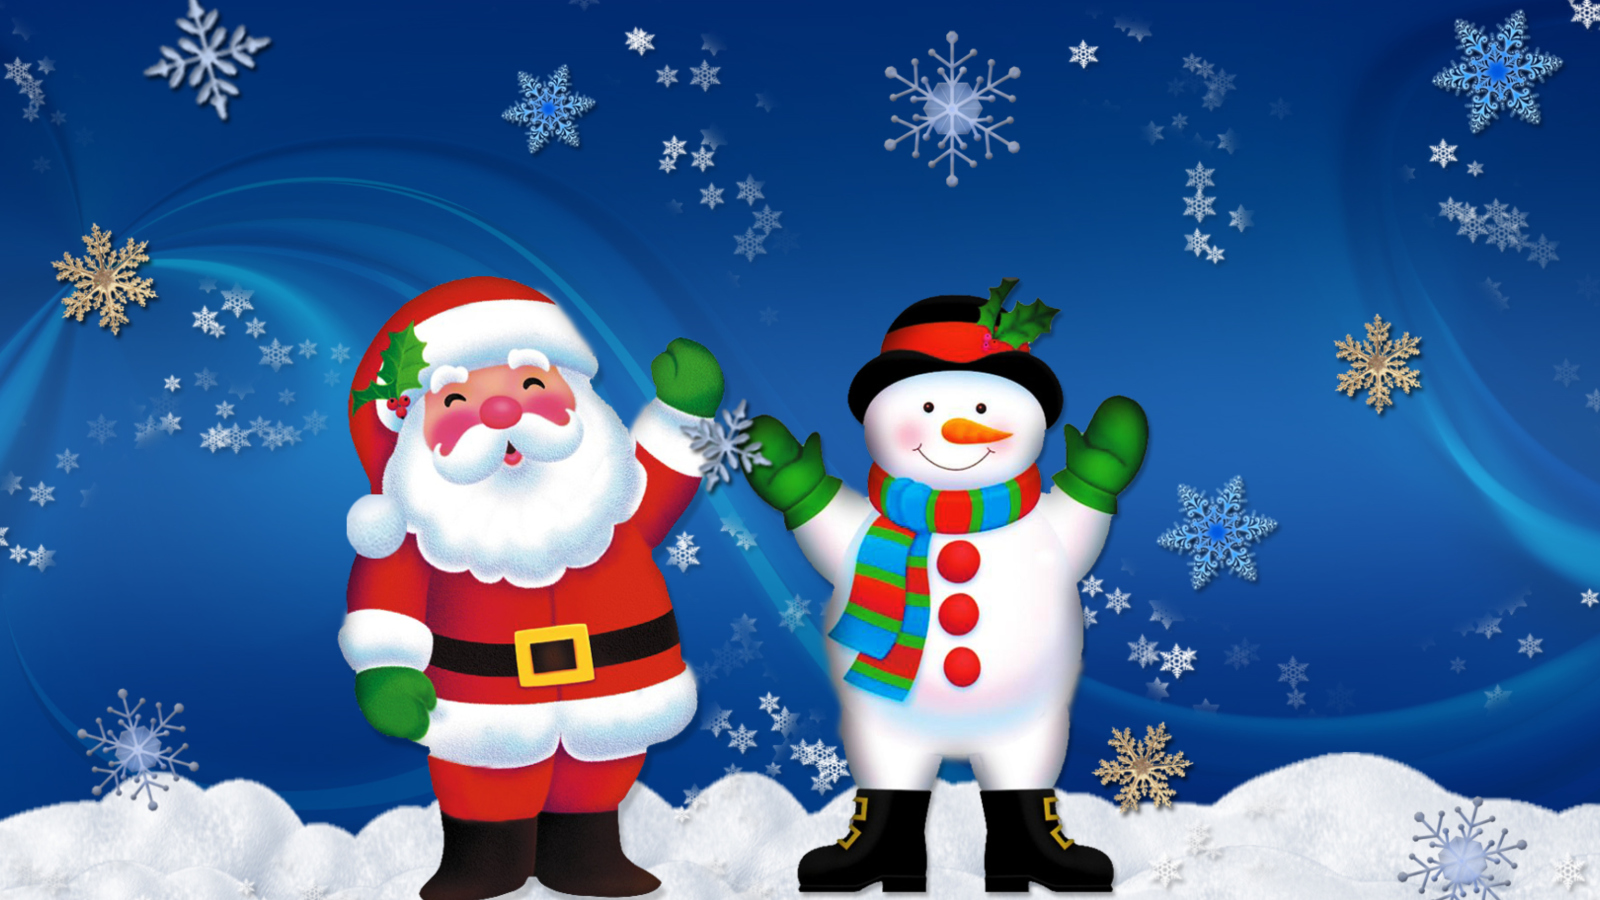 Das Hoo Hoo Christmas Wallpaper 1600x900